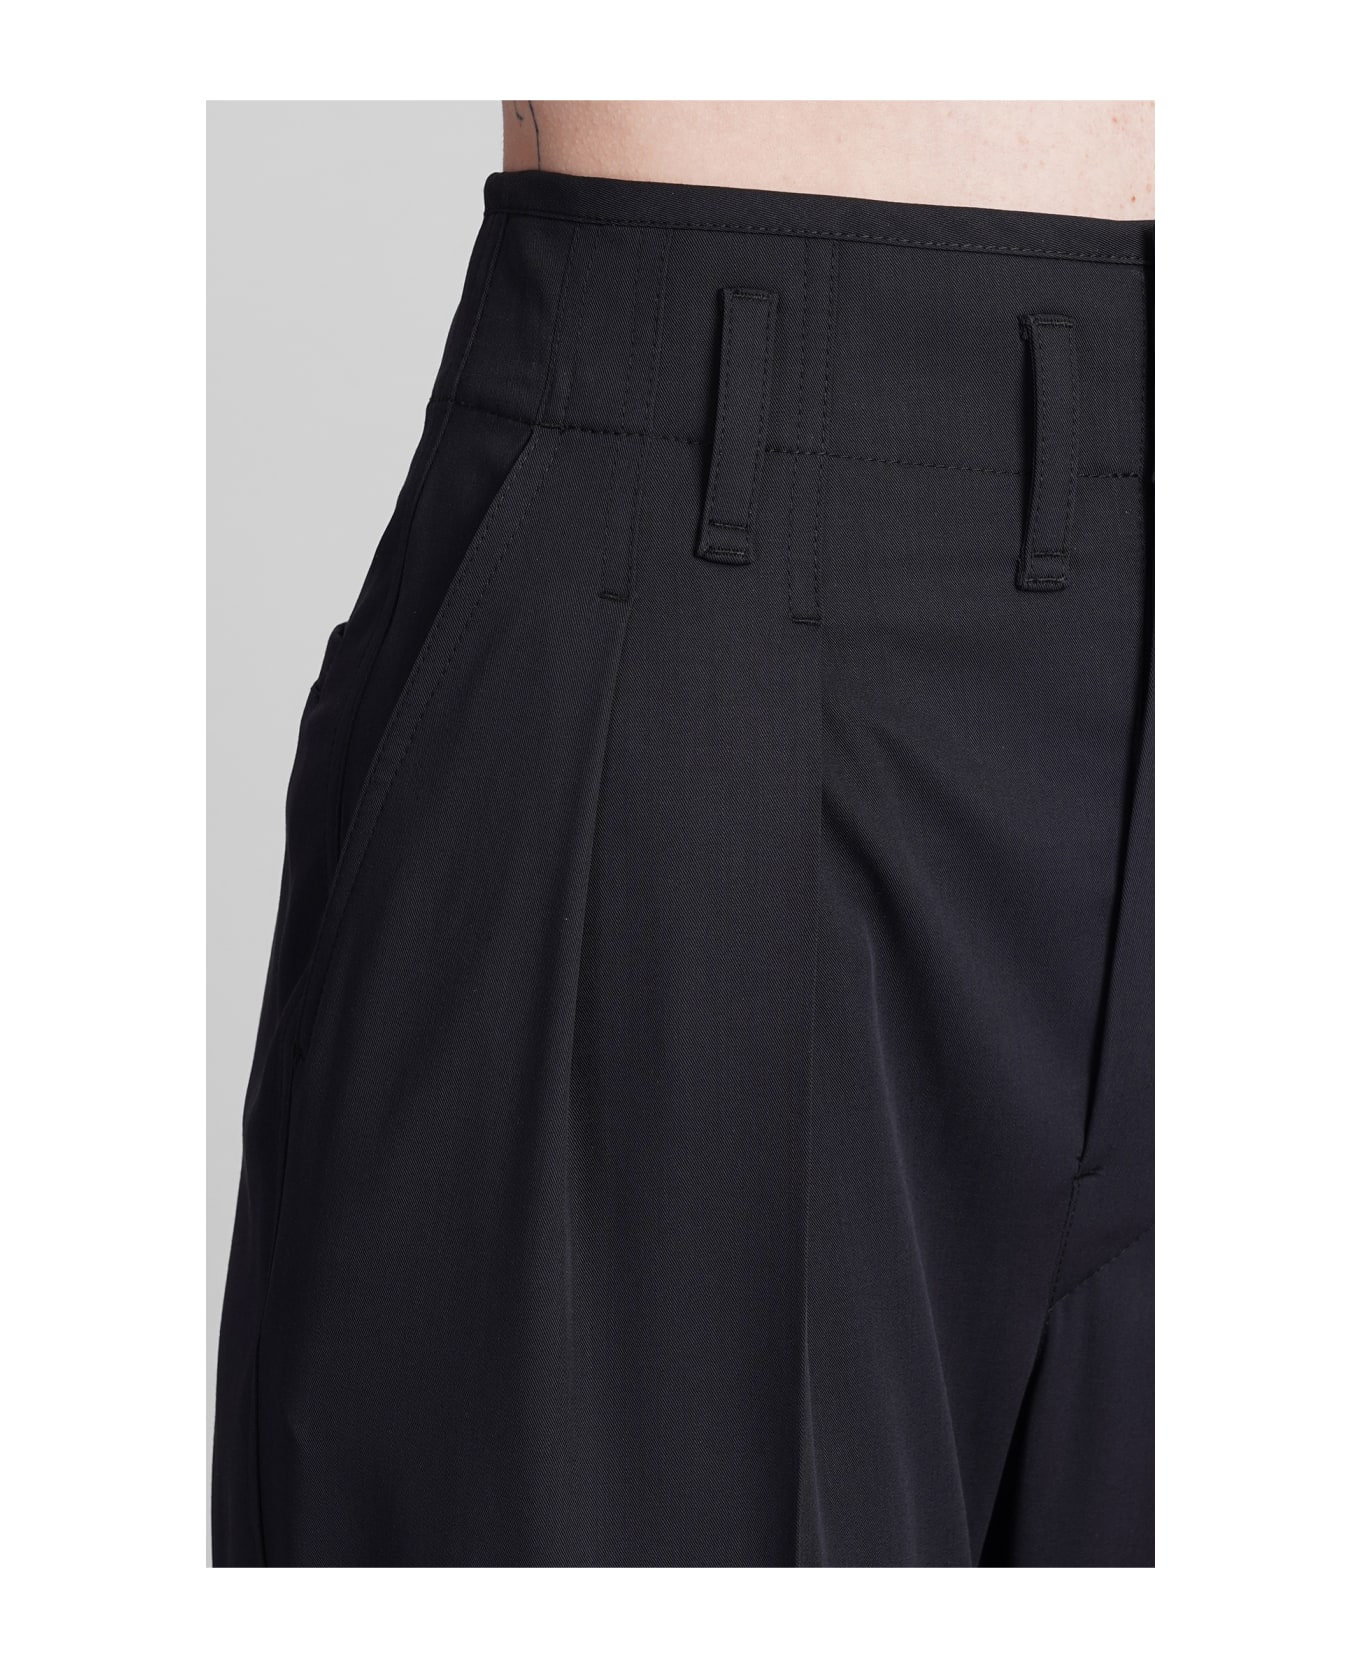 Lemaire Pants In Black Wool - black